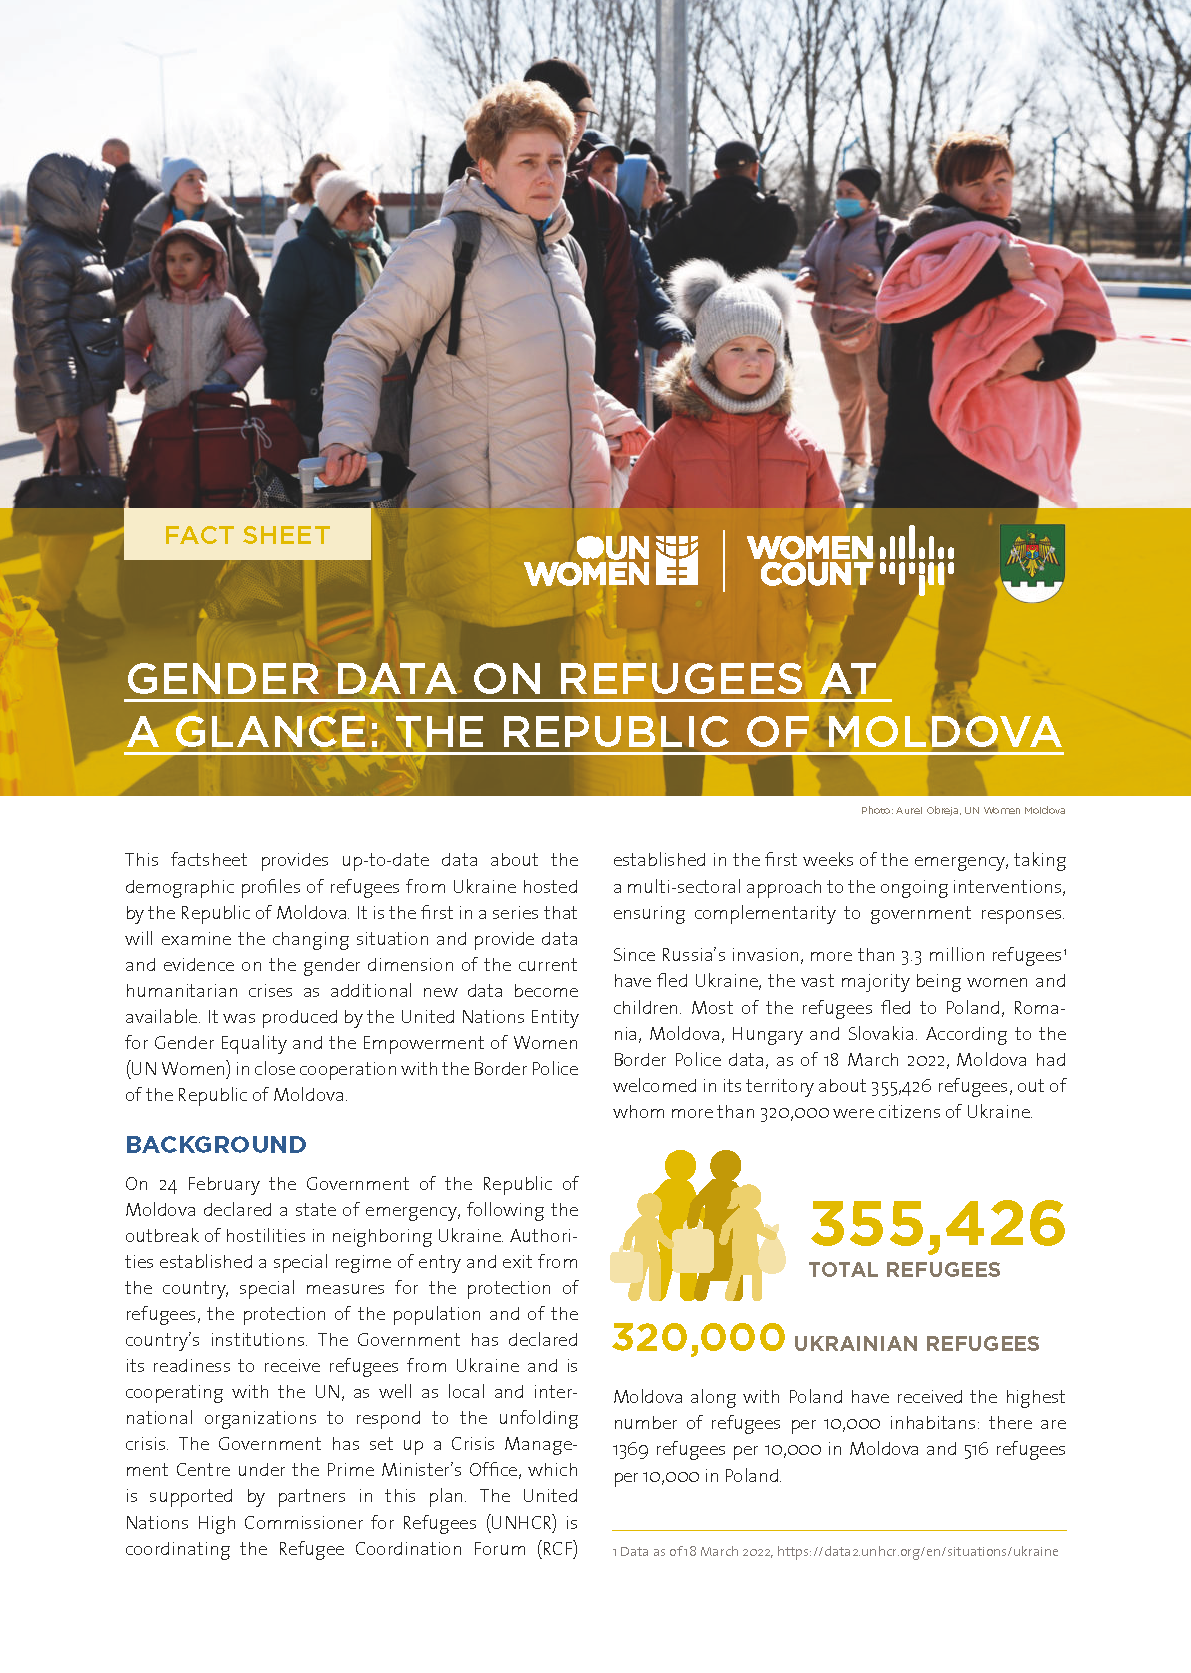 Gender data on refugees at a glance